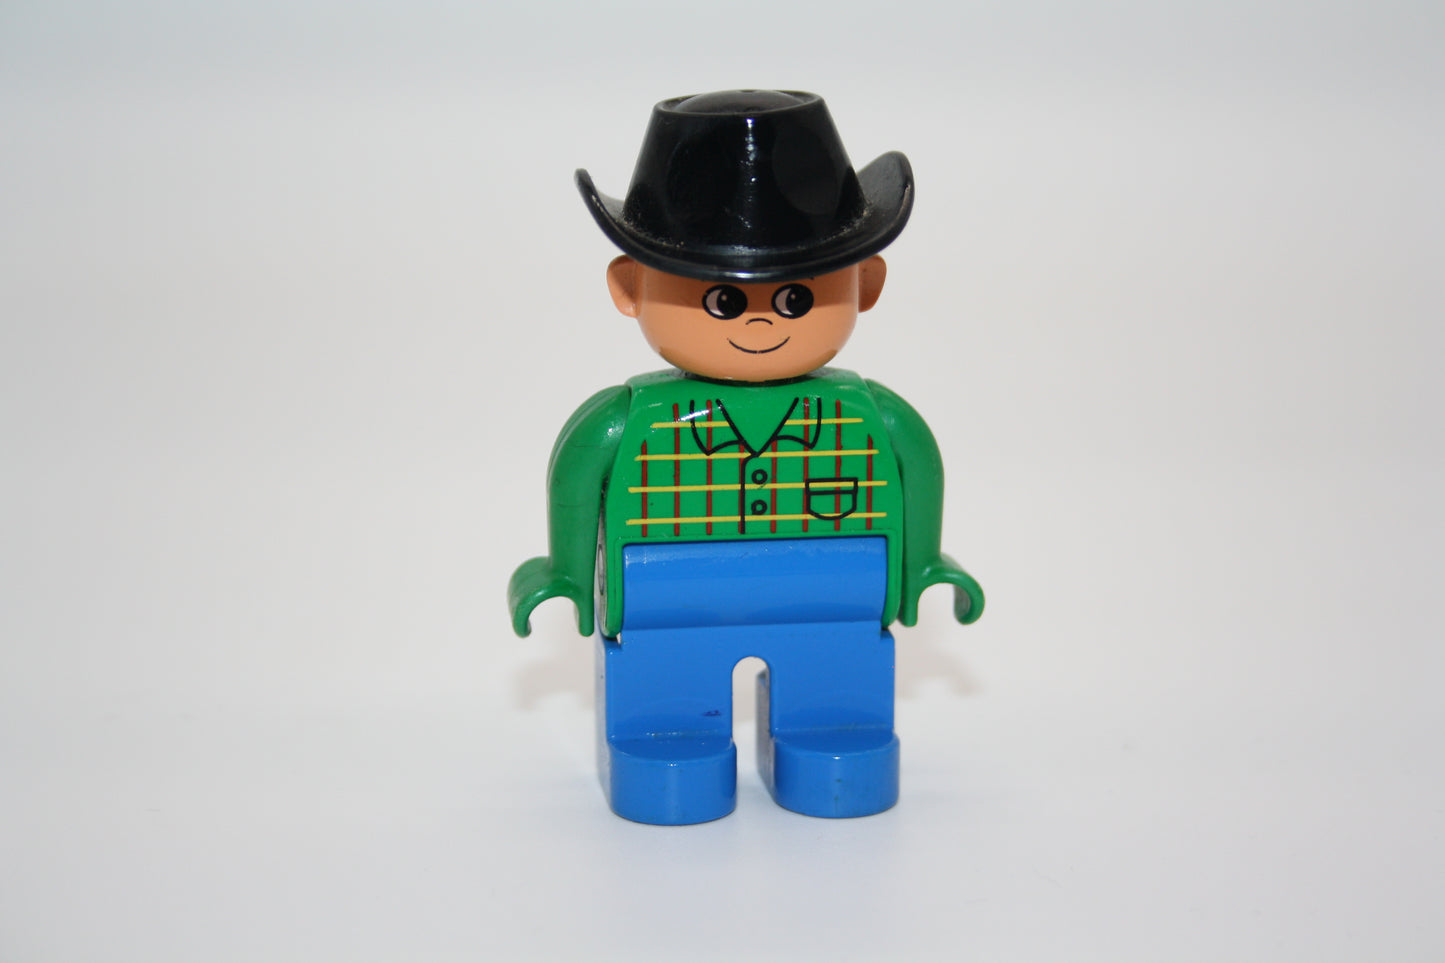 Duplo - Cowboy alt - blaue Hose/grünes Hemd - Mann - Figur